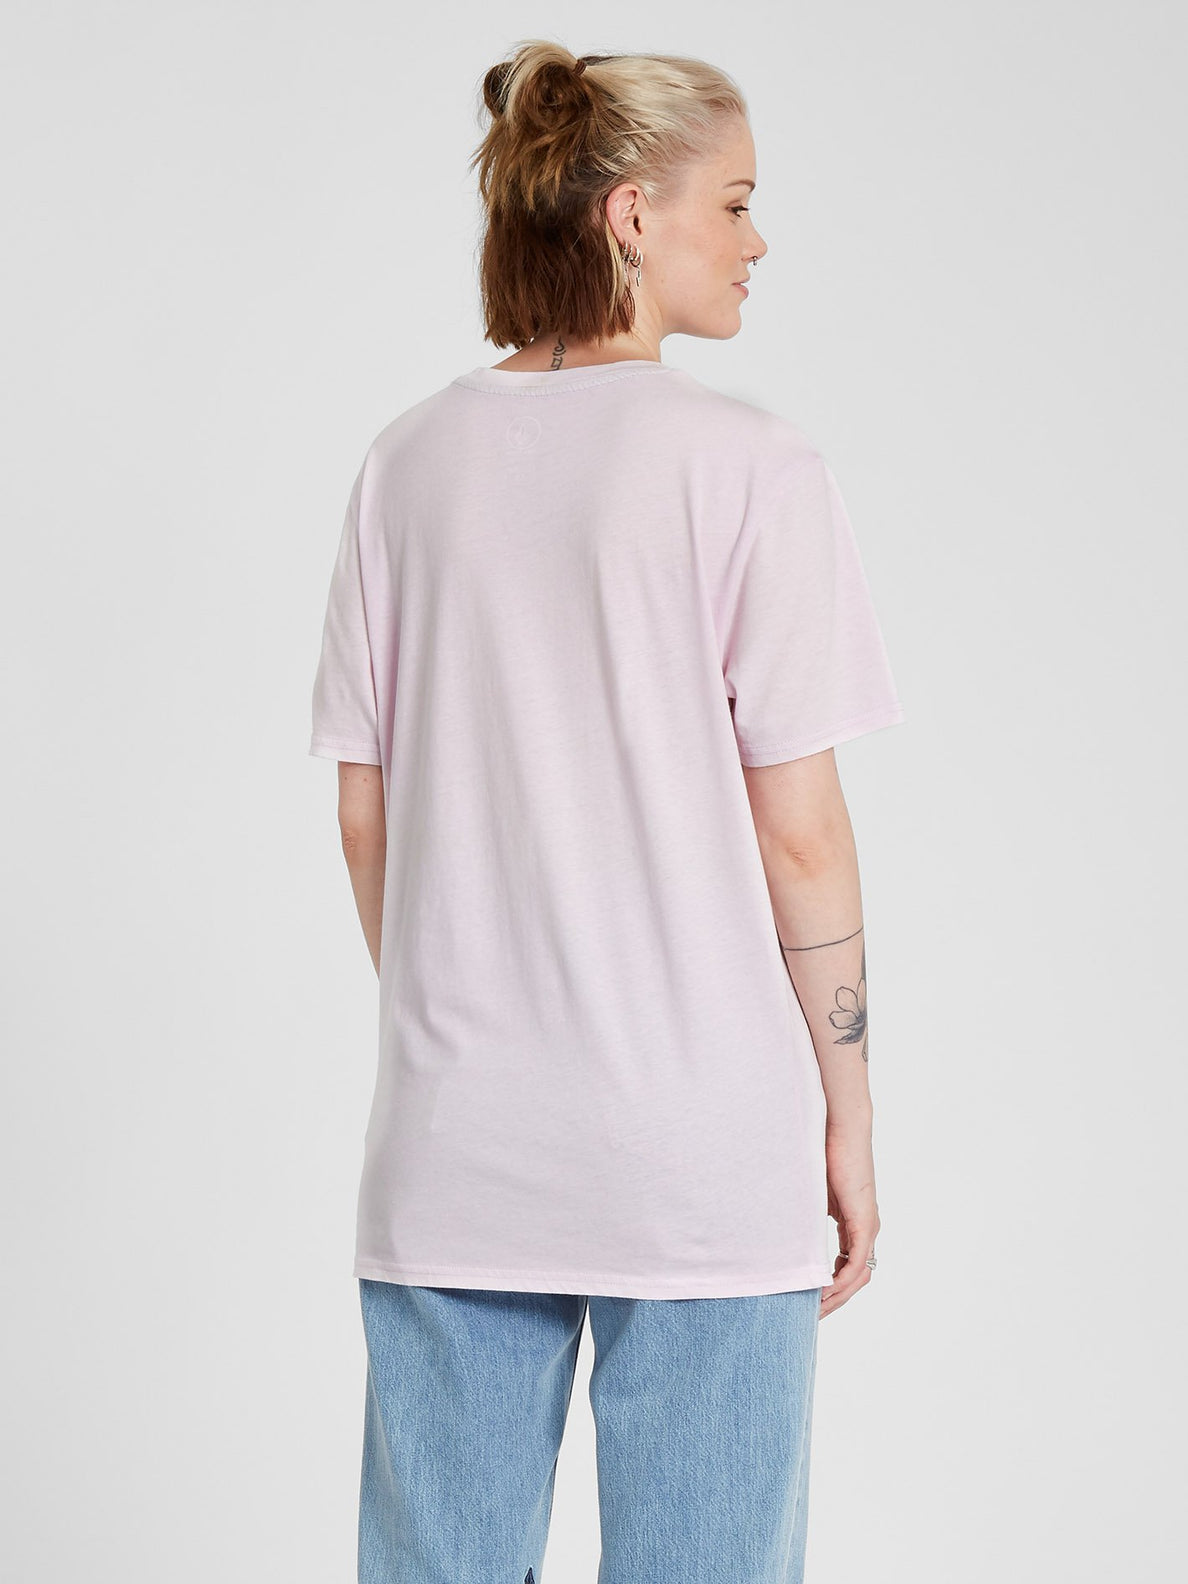 Solid Stone T-shirt - Lavender (B3512113_LAV) [B]